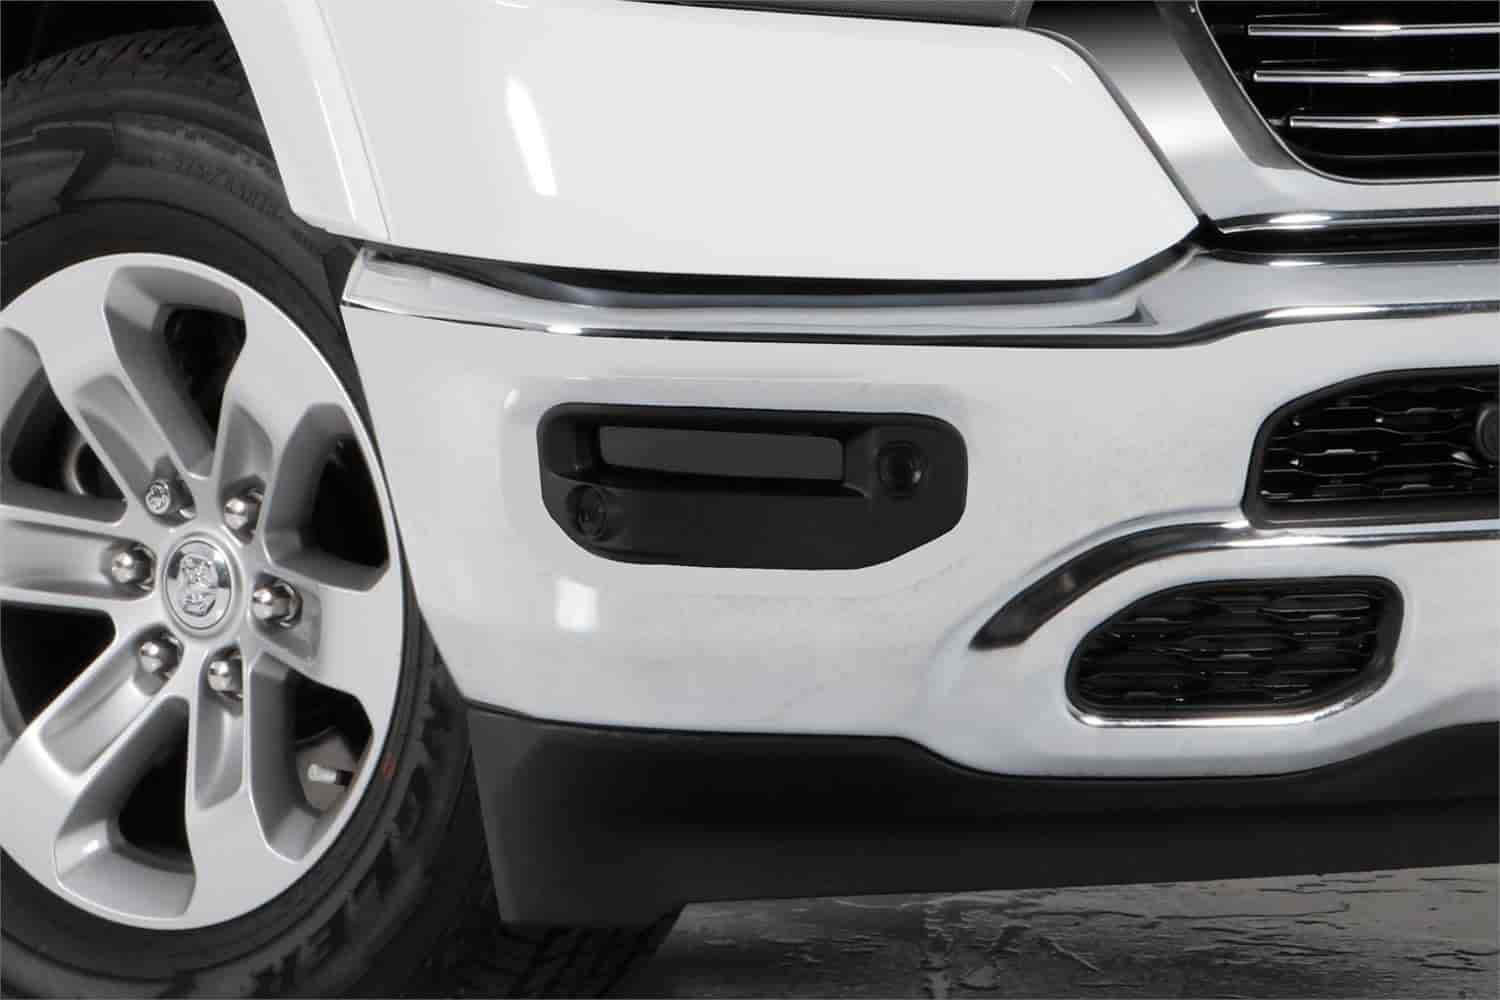 Carbon Fiber Fog Light Covers For Select Late-Model Ram 1500 Trucks